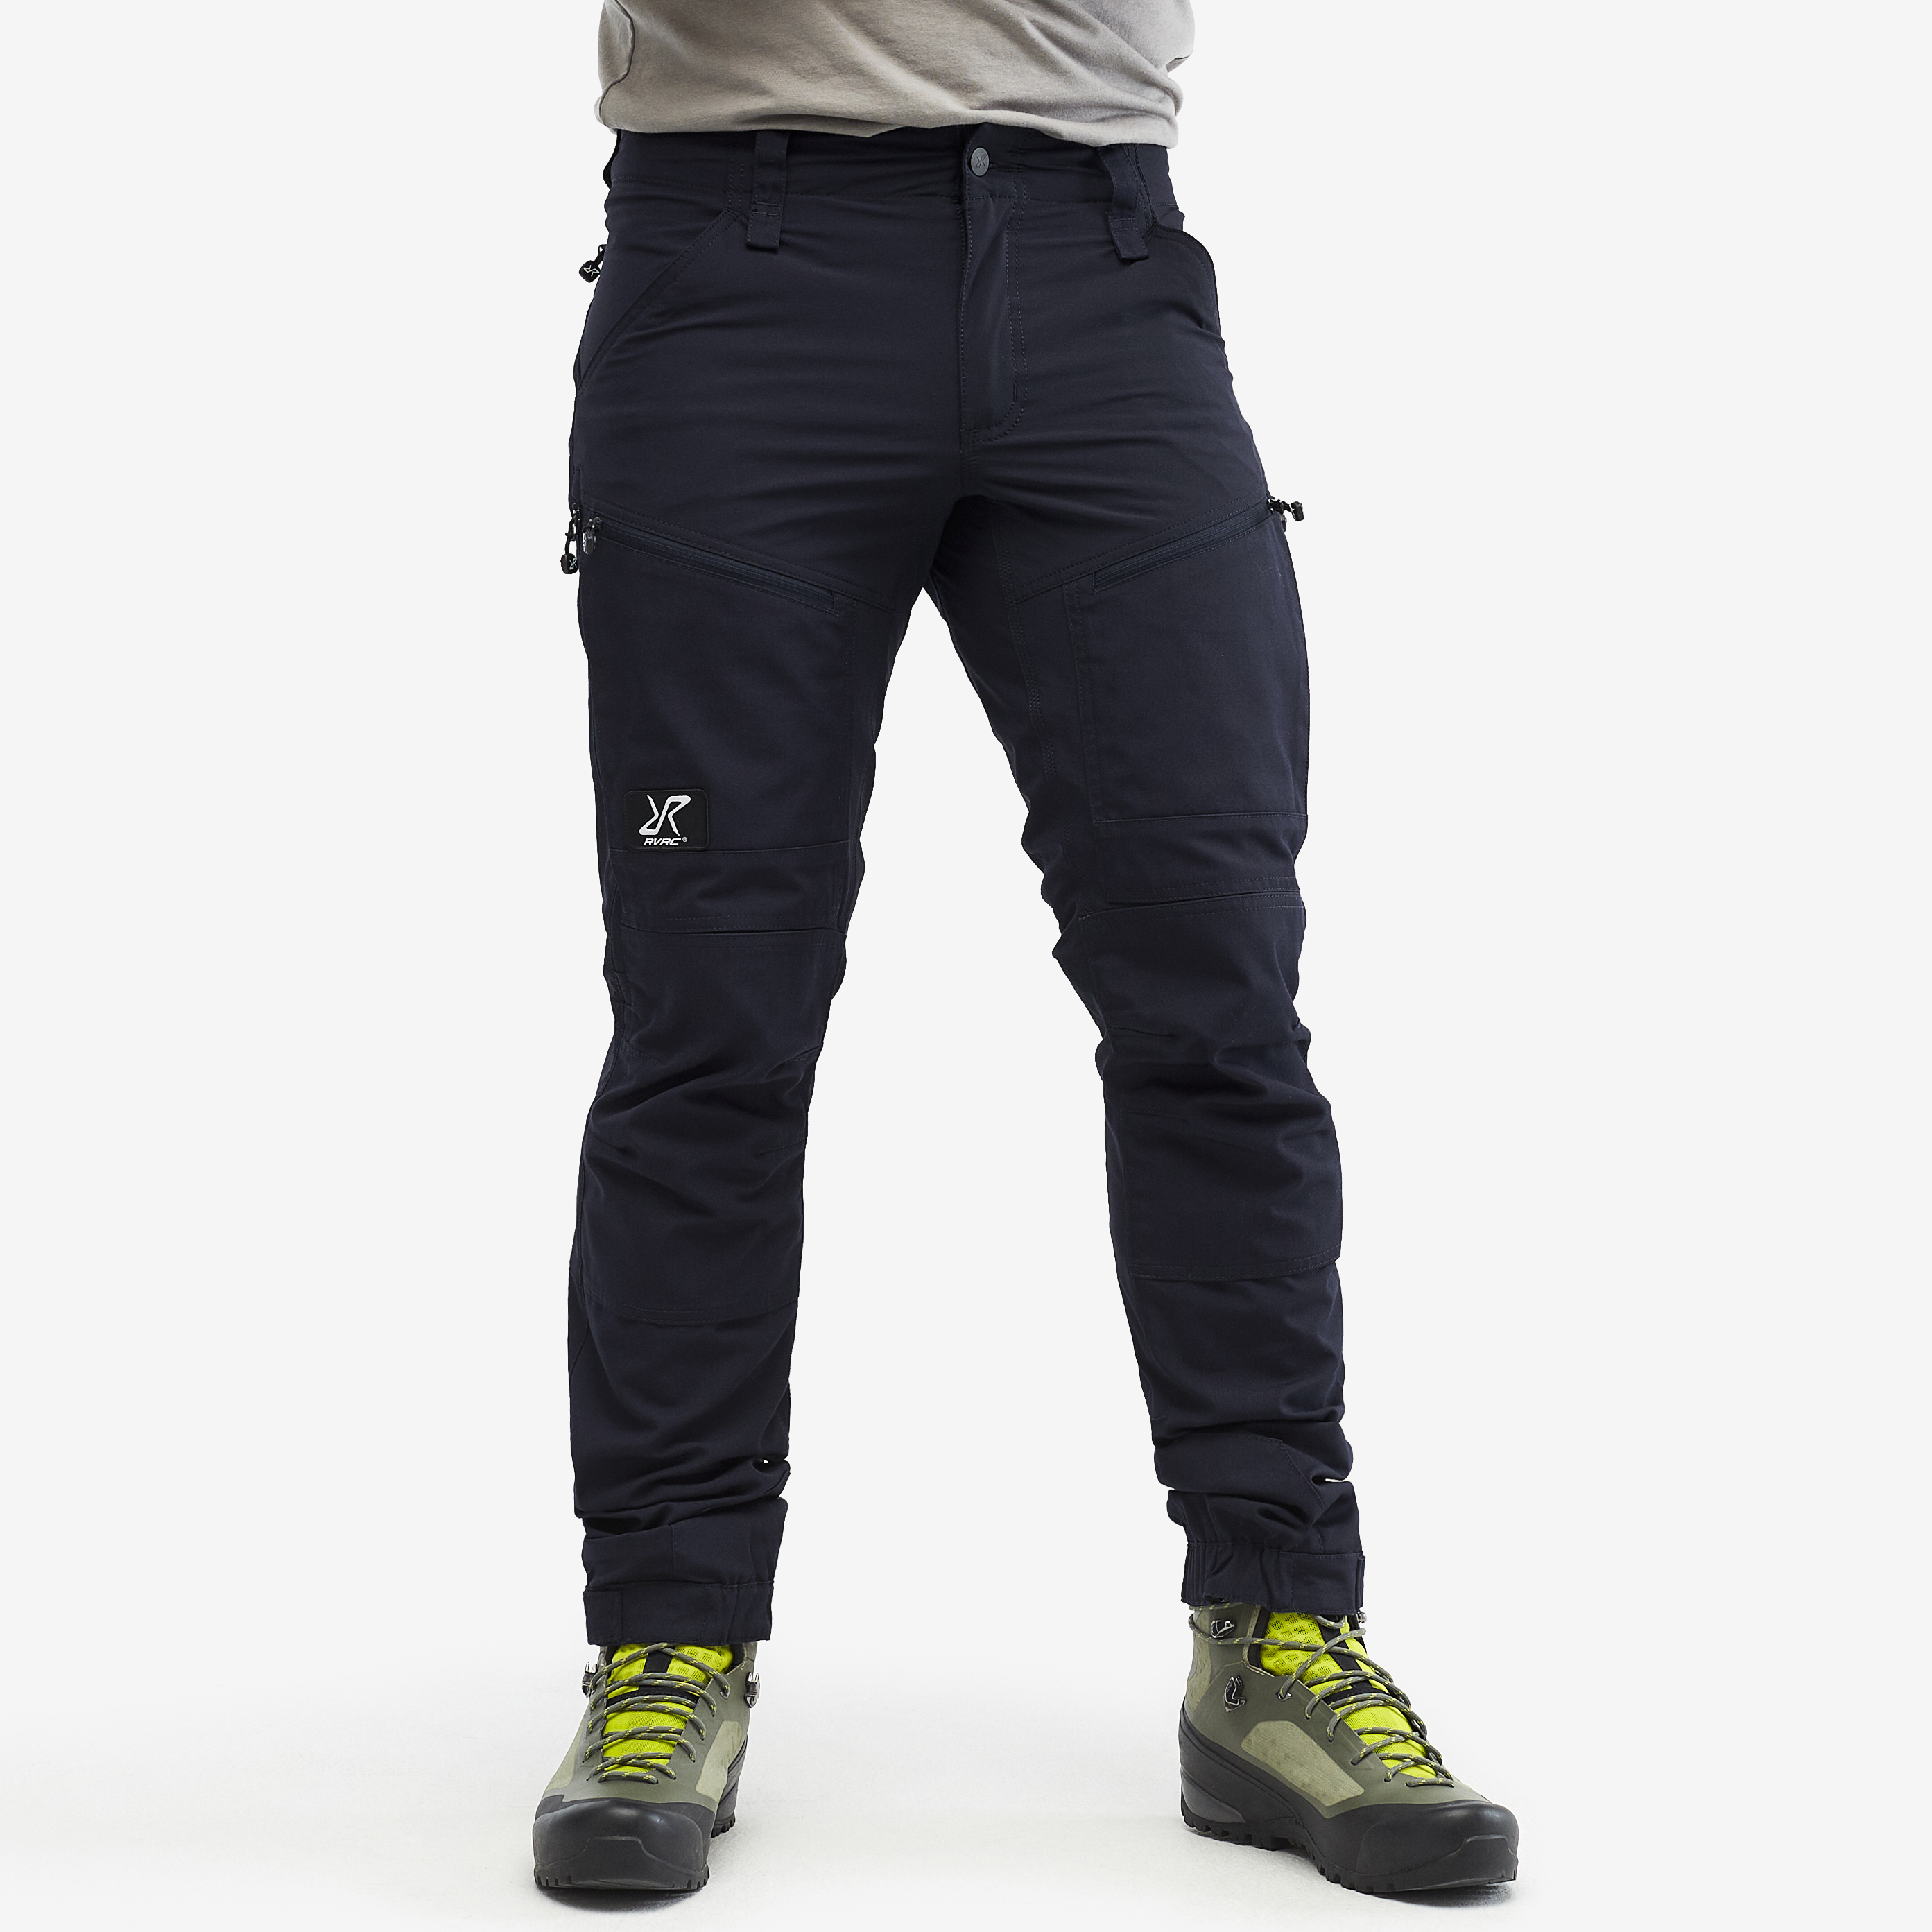 RVRC GP Pro turistické kalhoty pro muže v tmavě modré barvě